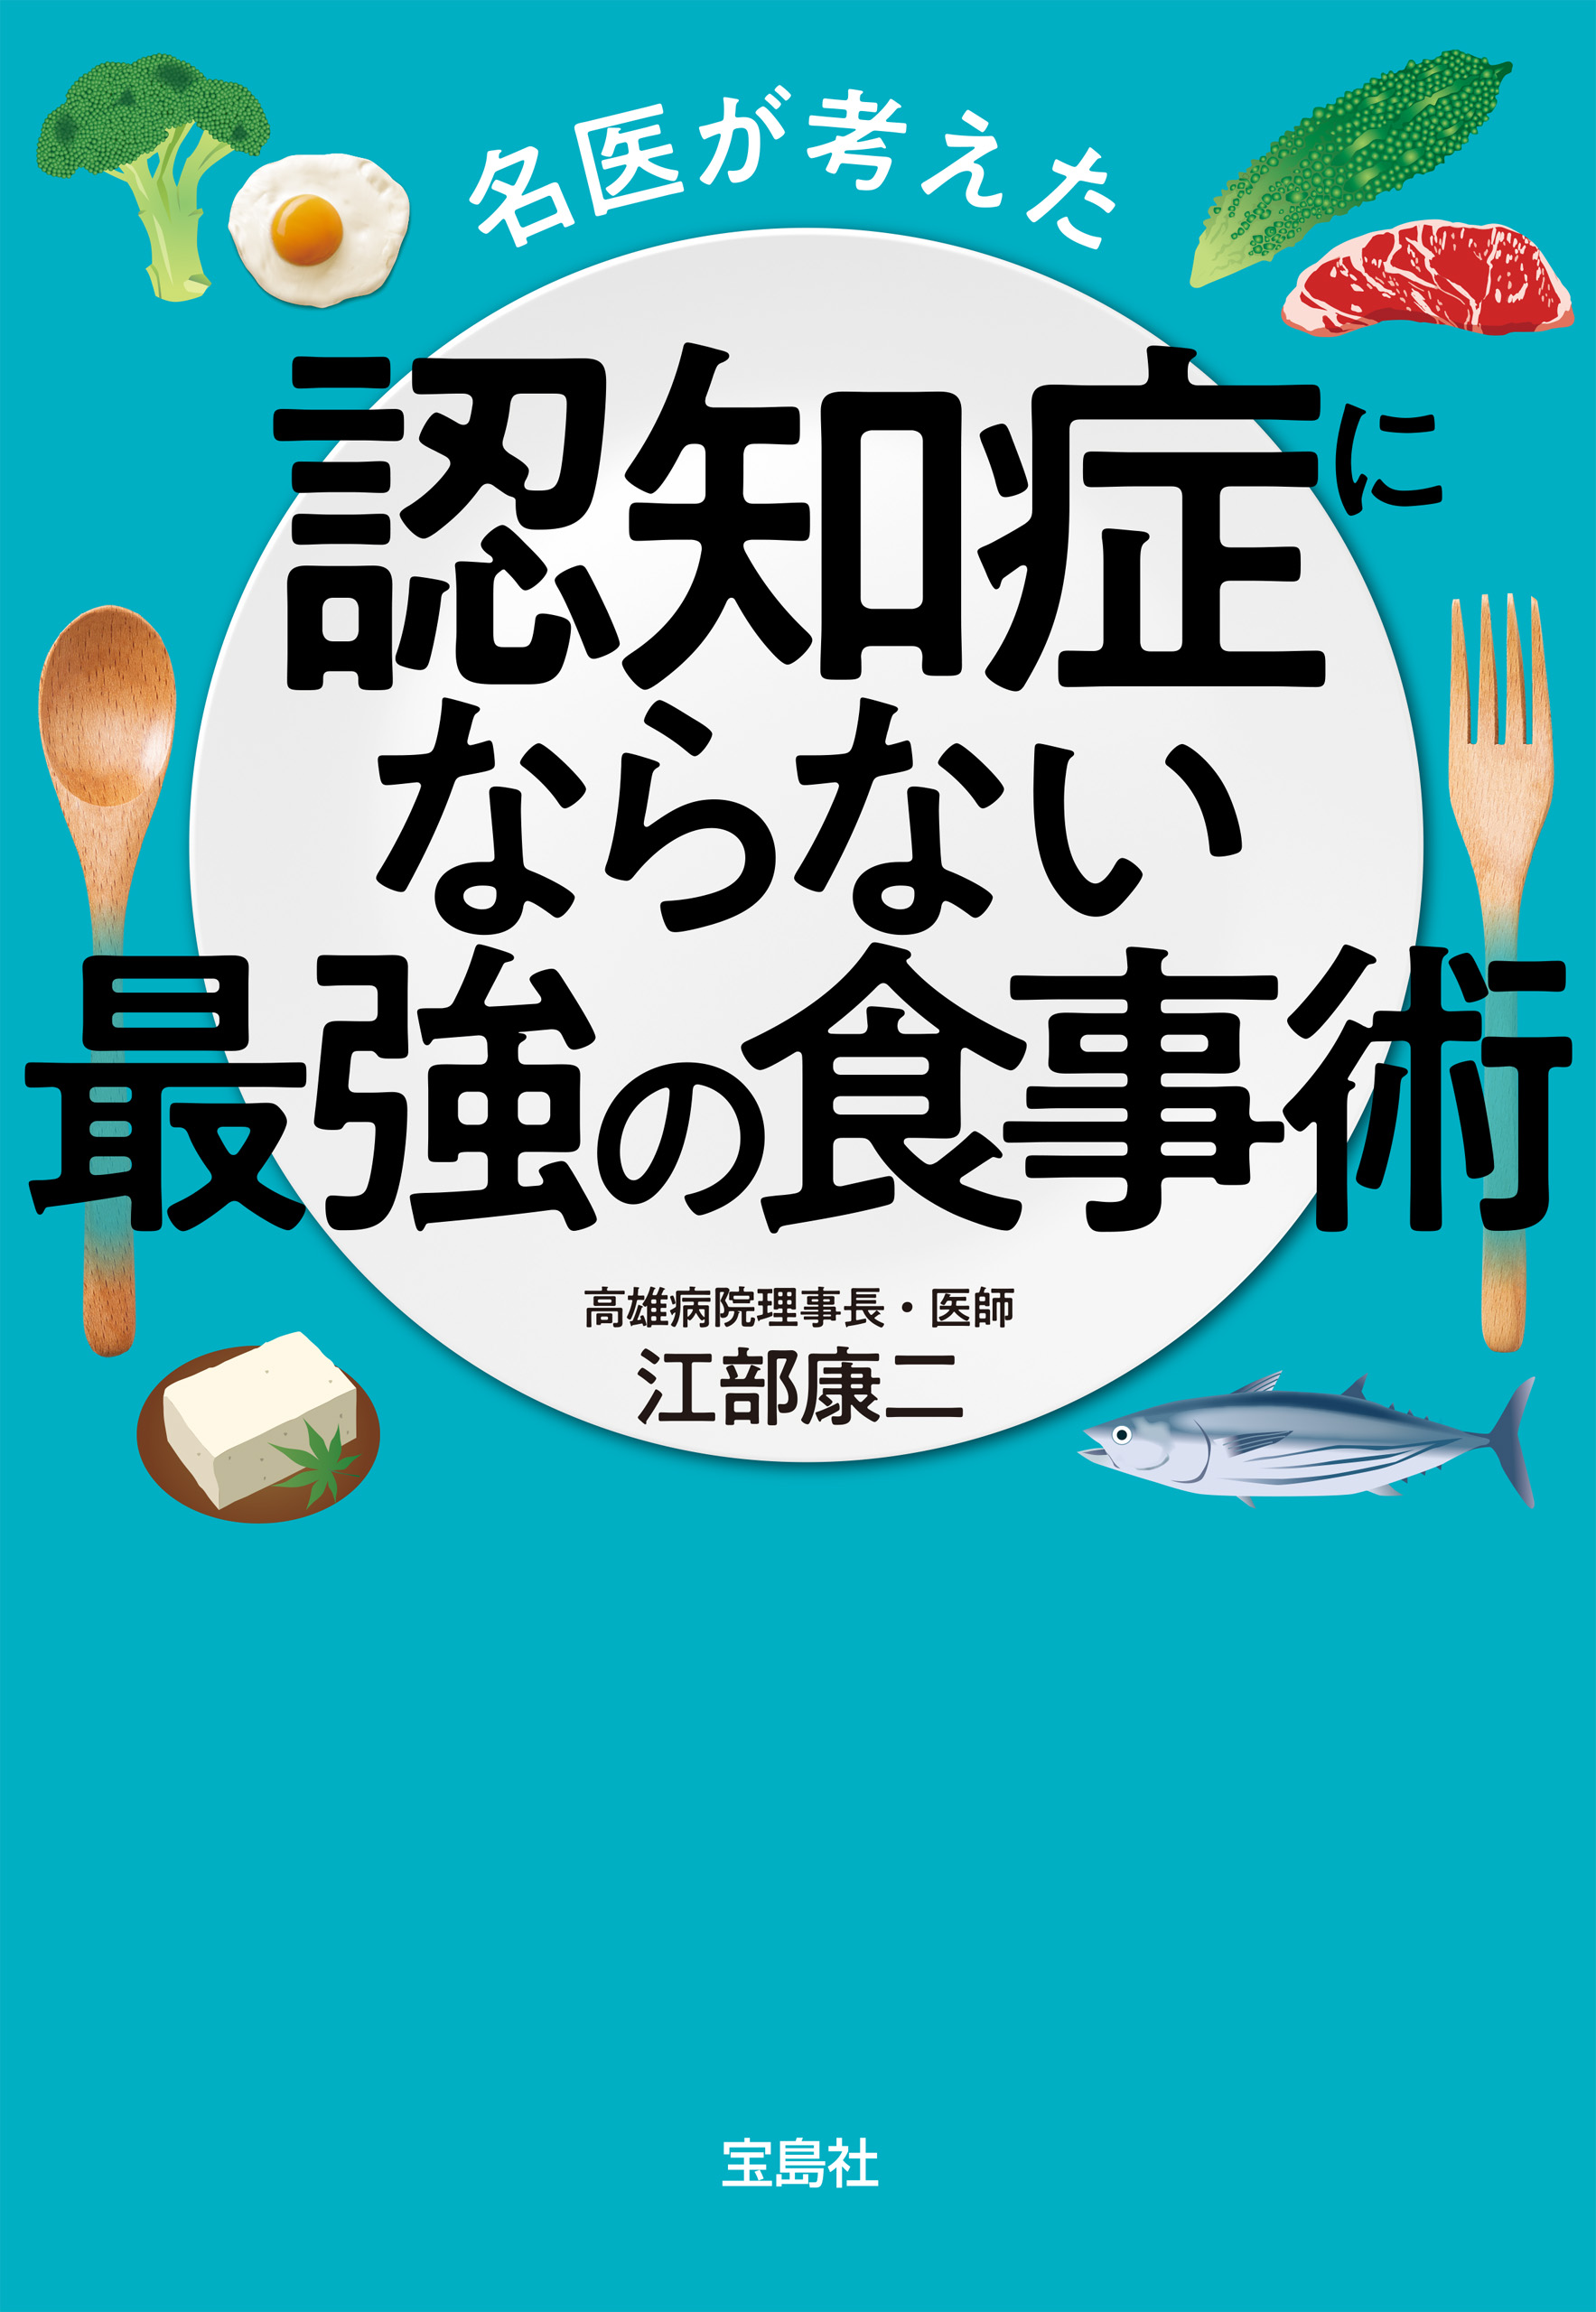 名医が考えた認知症にならない最強の食事術 - 江部康二 - 漫画・ラノベ